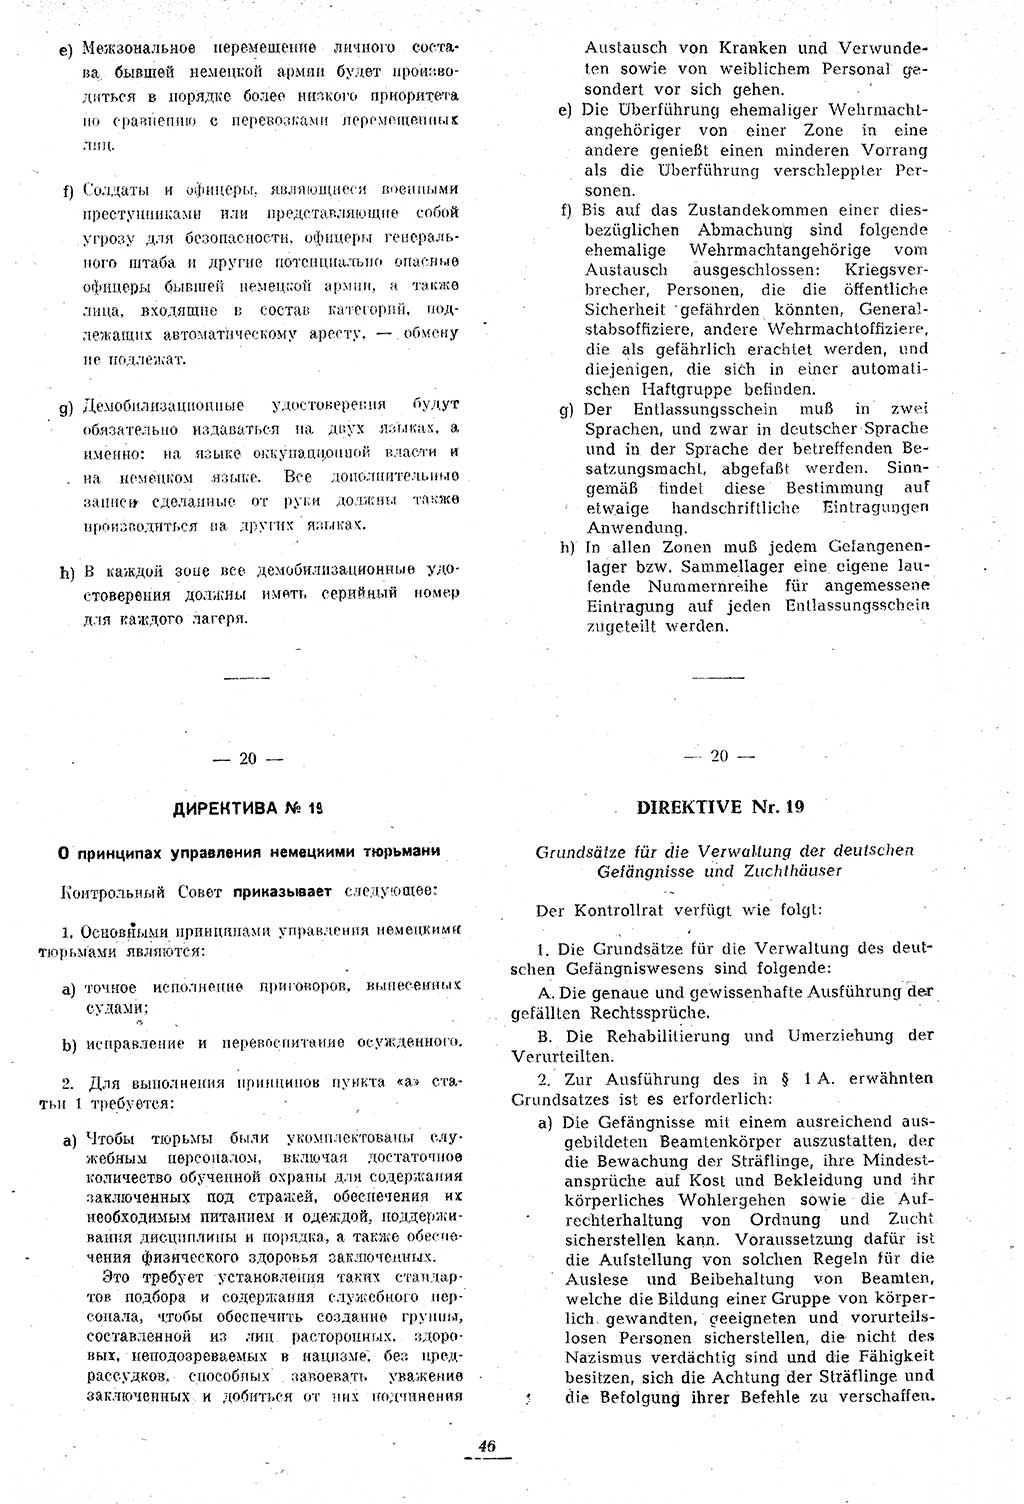 Amtsblatt des Kontrollrats (ABlKR) in Deutschland 1946, Seite 46/2 (ABlKR Dtl. 1946, S. 46/2)